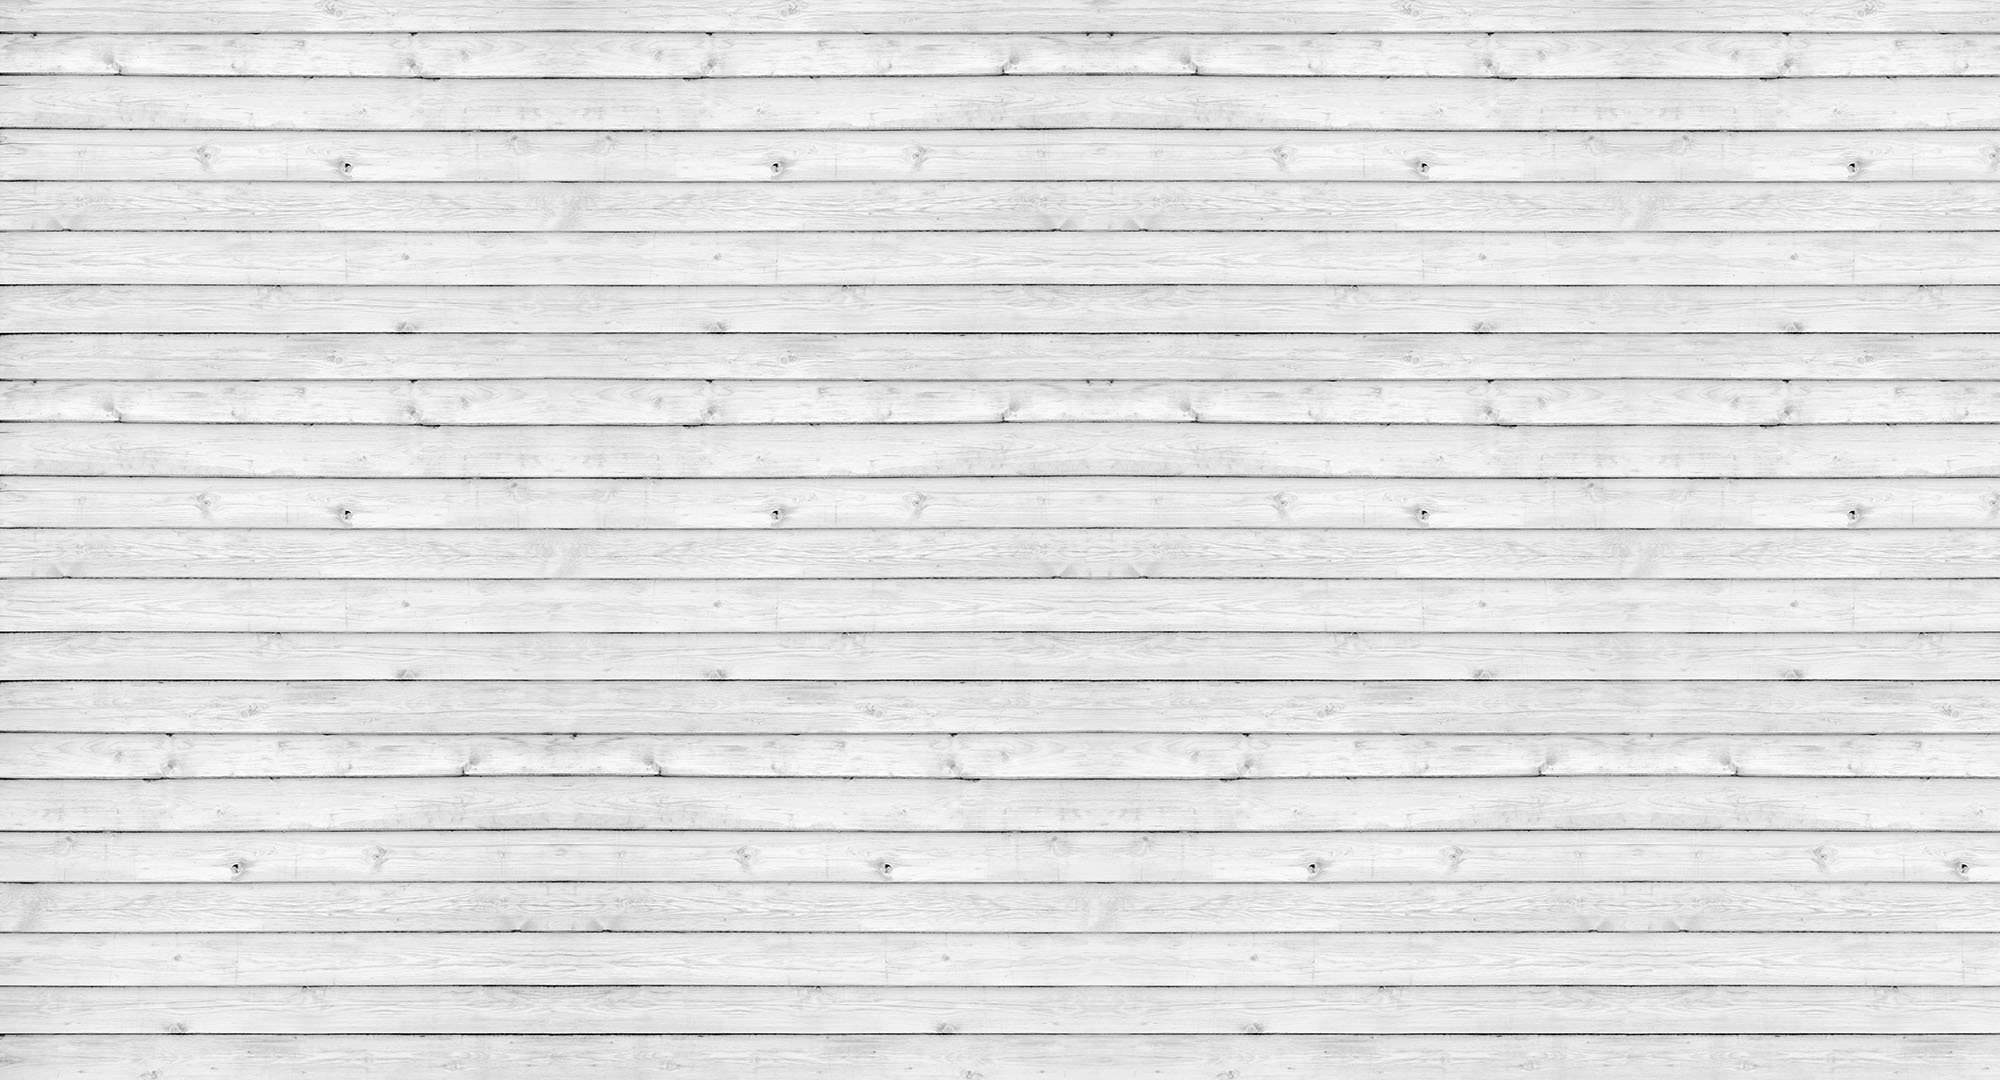 Белая деревянная стена